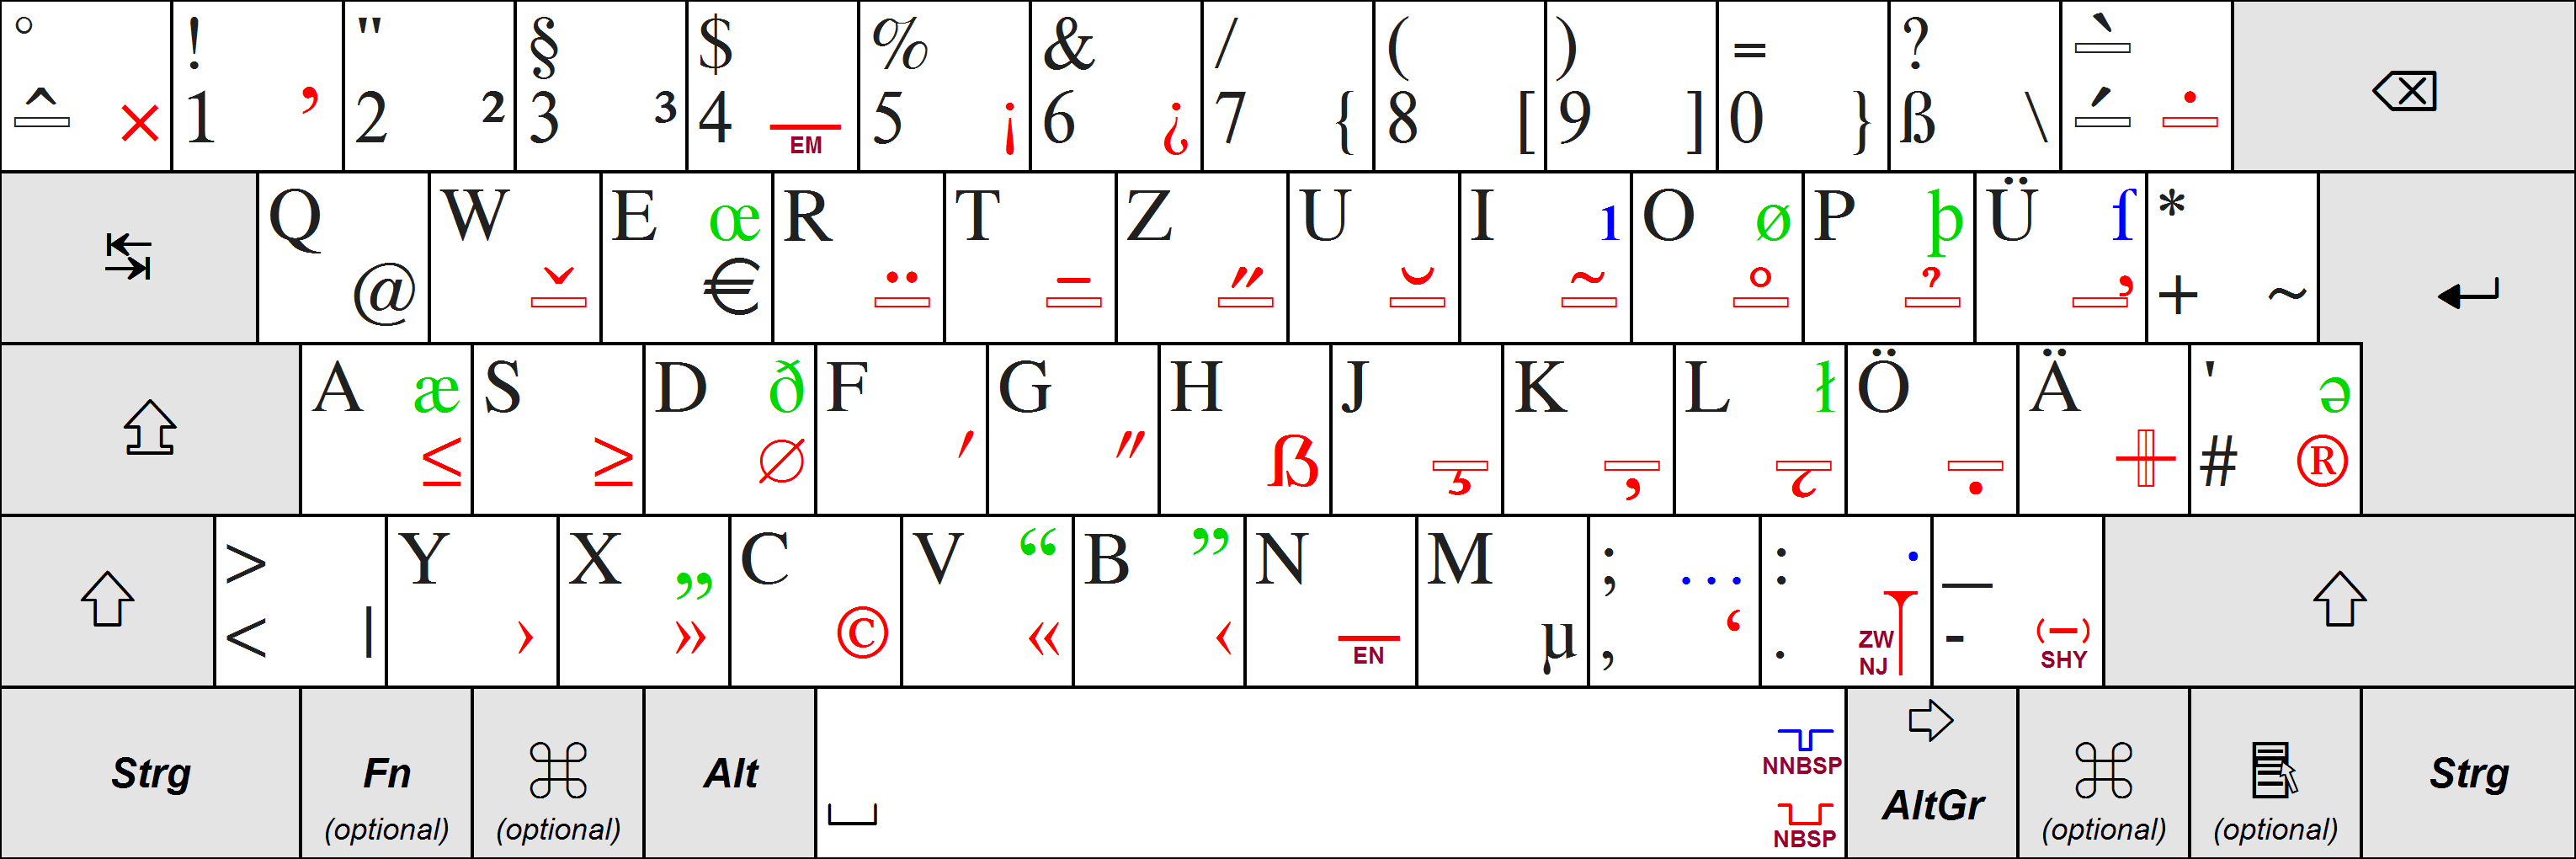 deutsch german keyboard layout windows 8